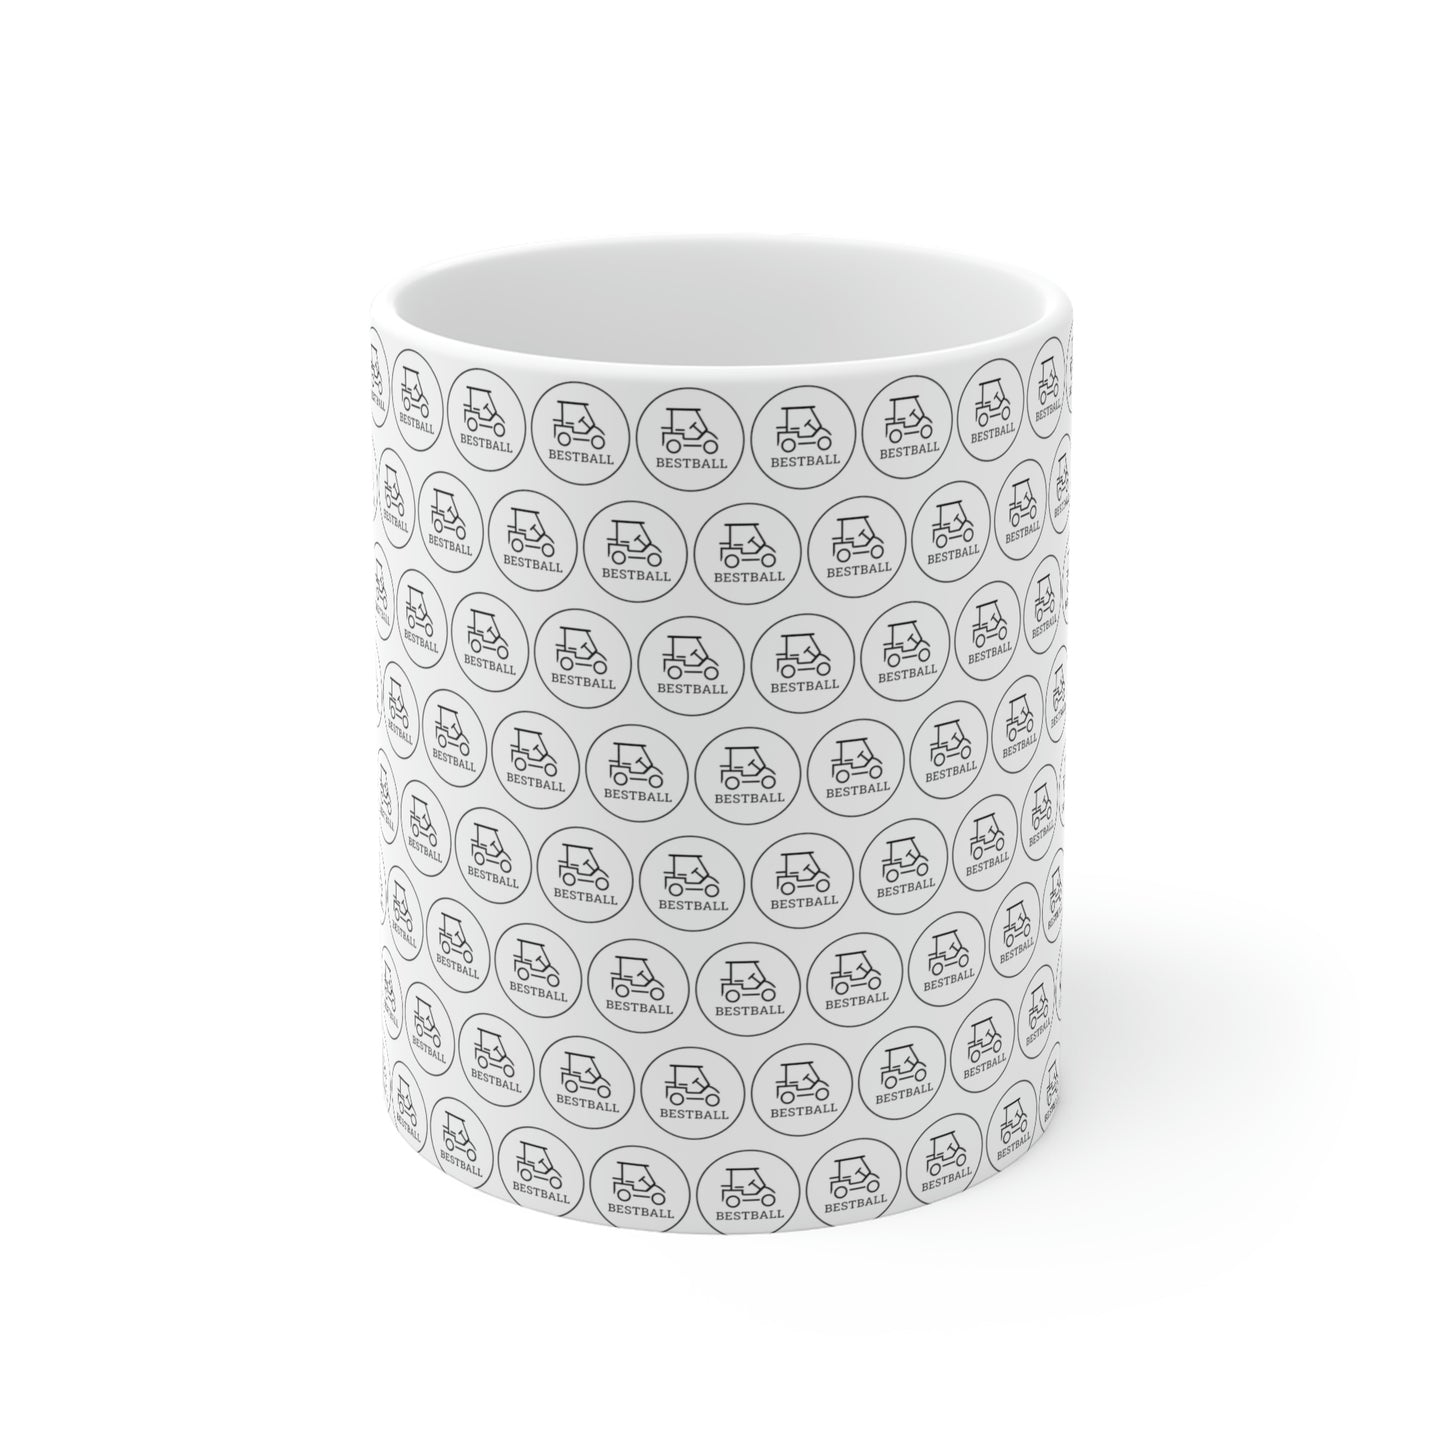 BestBall - White Ceramic Mugs (11oz)